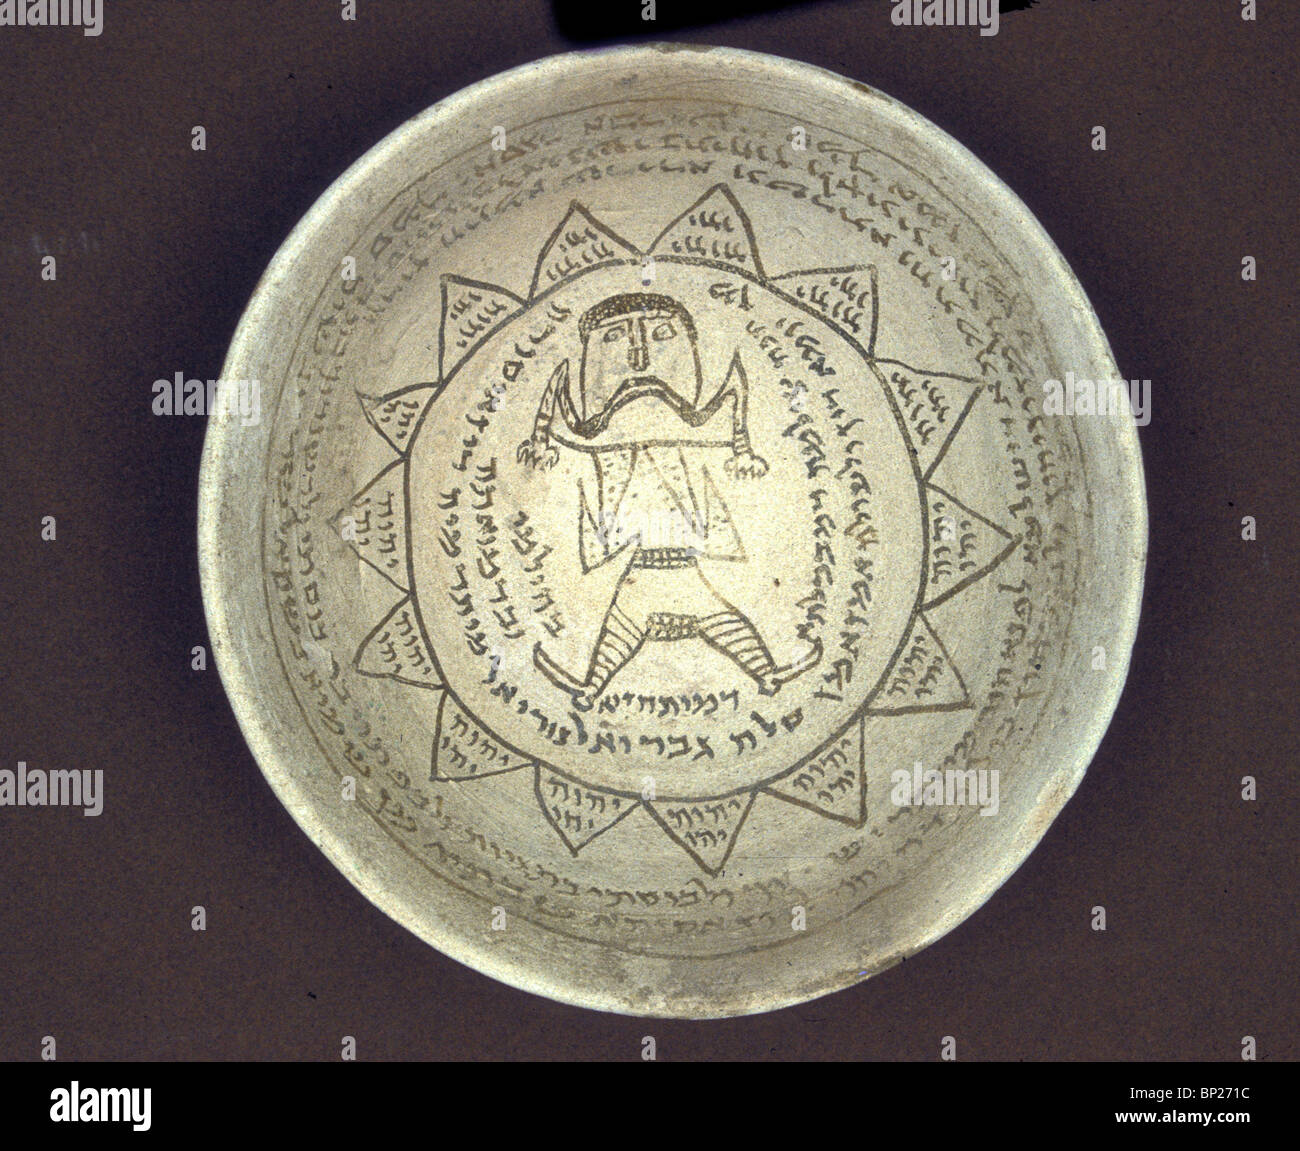 ARAMEIC ebraica incantesimi scritto su tazze di ceramica in Babilonia dating da CA. 5a - 6TH. D. C. Il testo si suppone Foto Stock